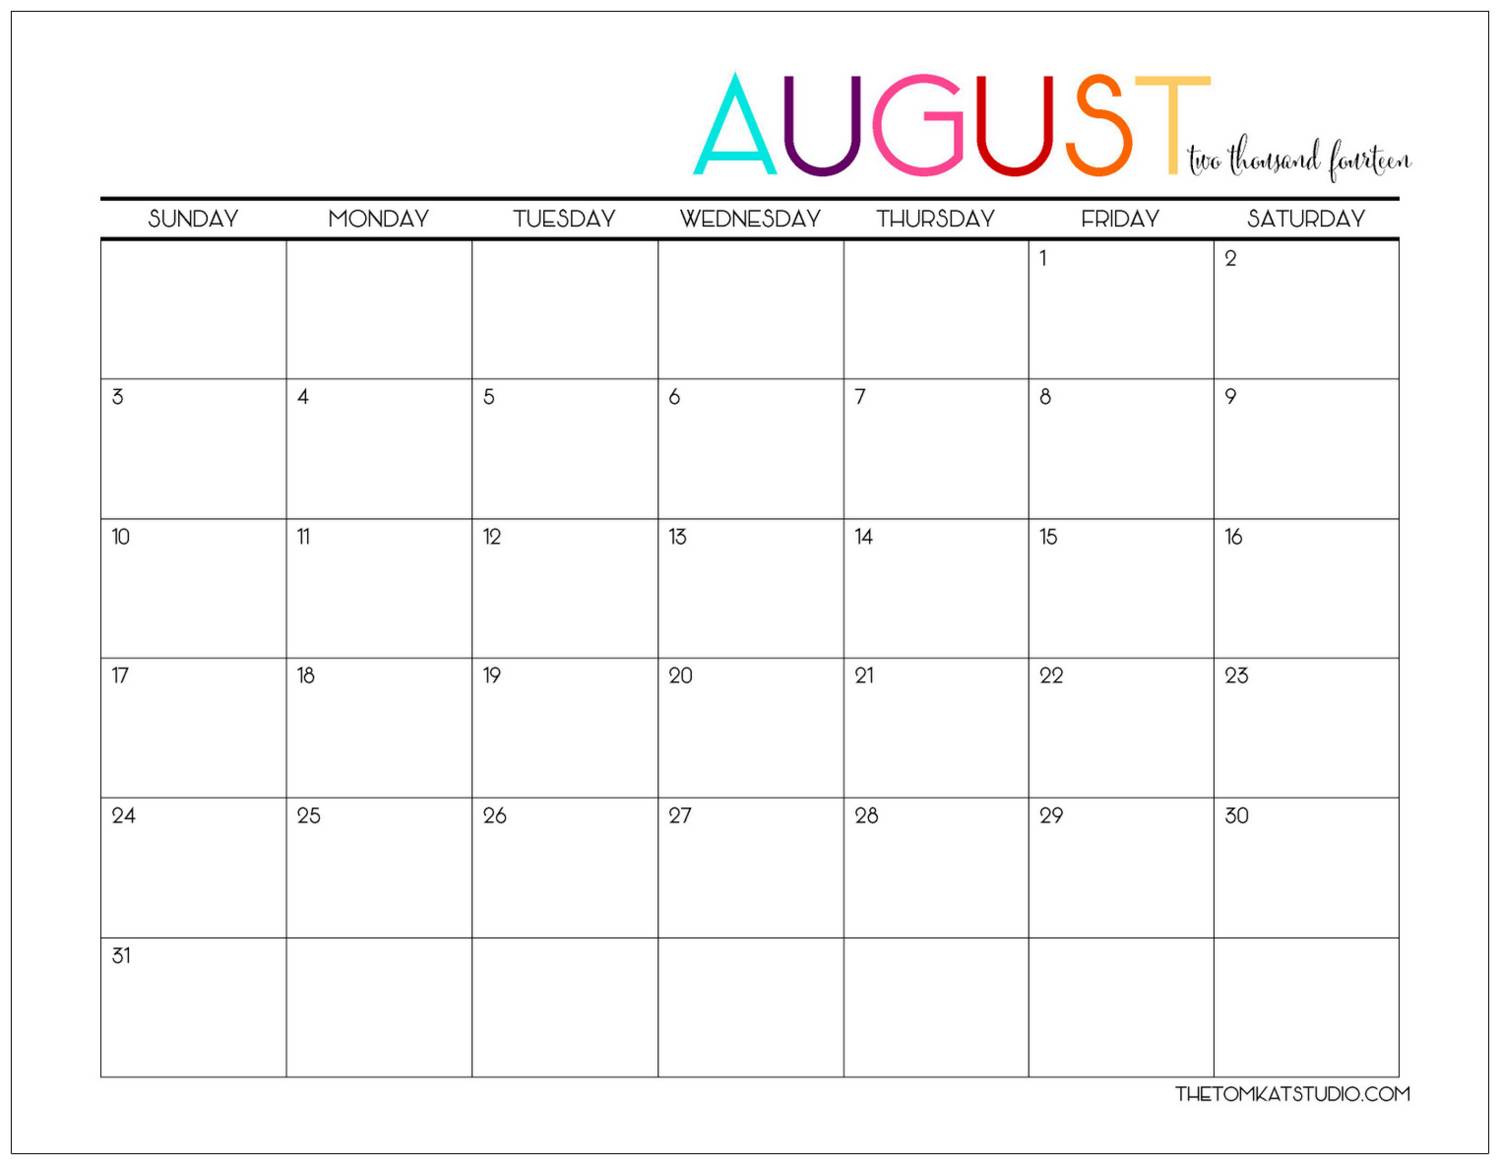 http://www.thetomkatstudio.com/wp-content/uploads/2014/07/august-calendar1.jpg